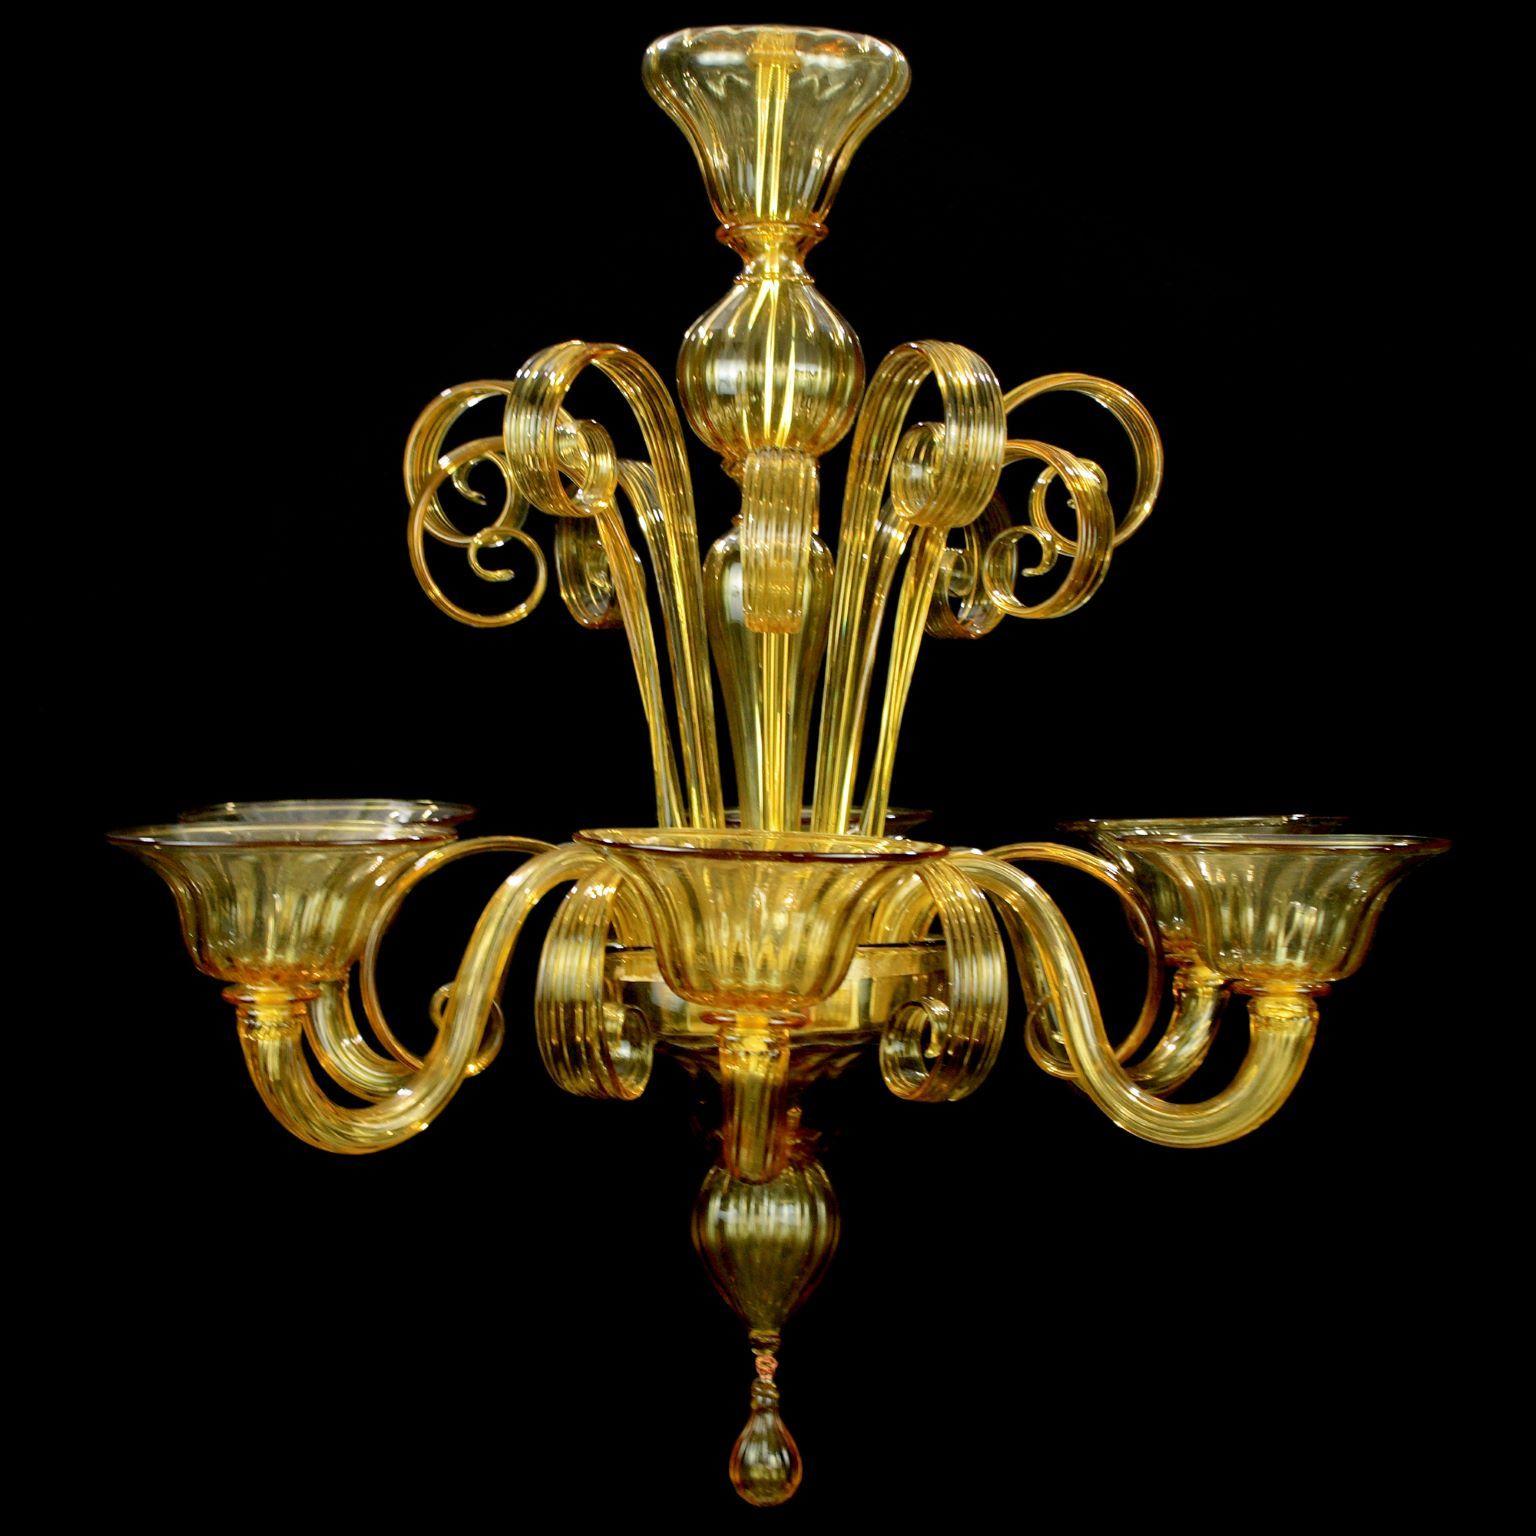 Capriccio de Multiforme est un lustre à 6 lumières, en verre artistique d'acacia, avec des éléments ornementaux frisés.
Inspiré de la tradition classique vénitienne, il se caractérise par une colonne centrale où sont installés de nombreux éléments